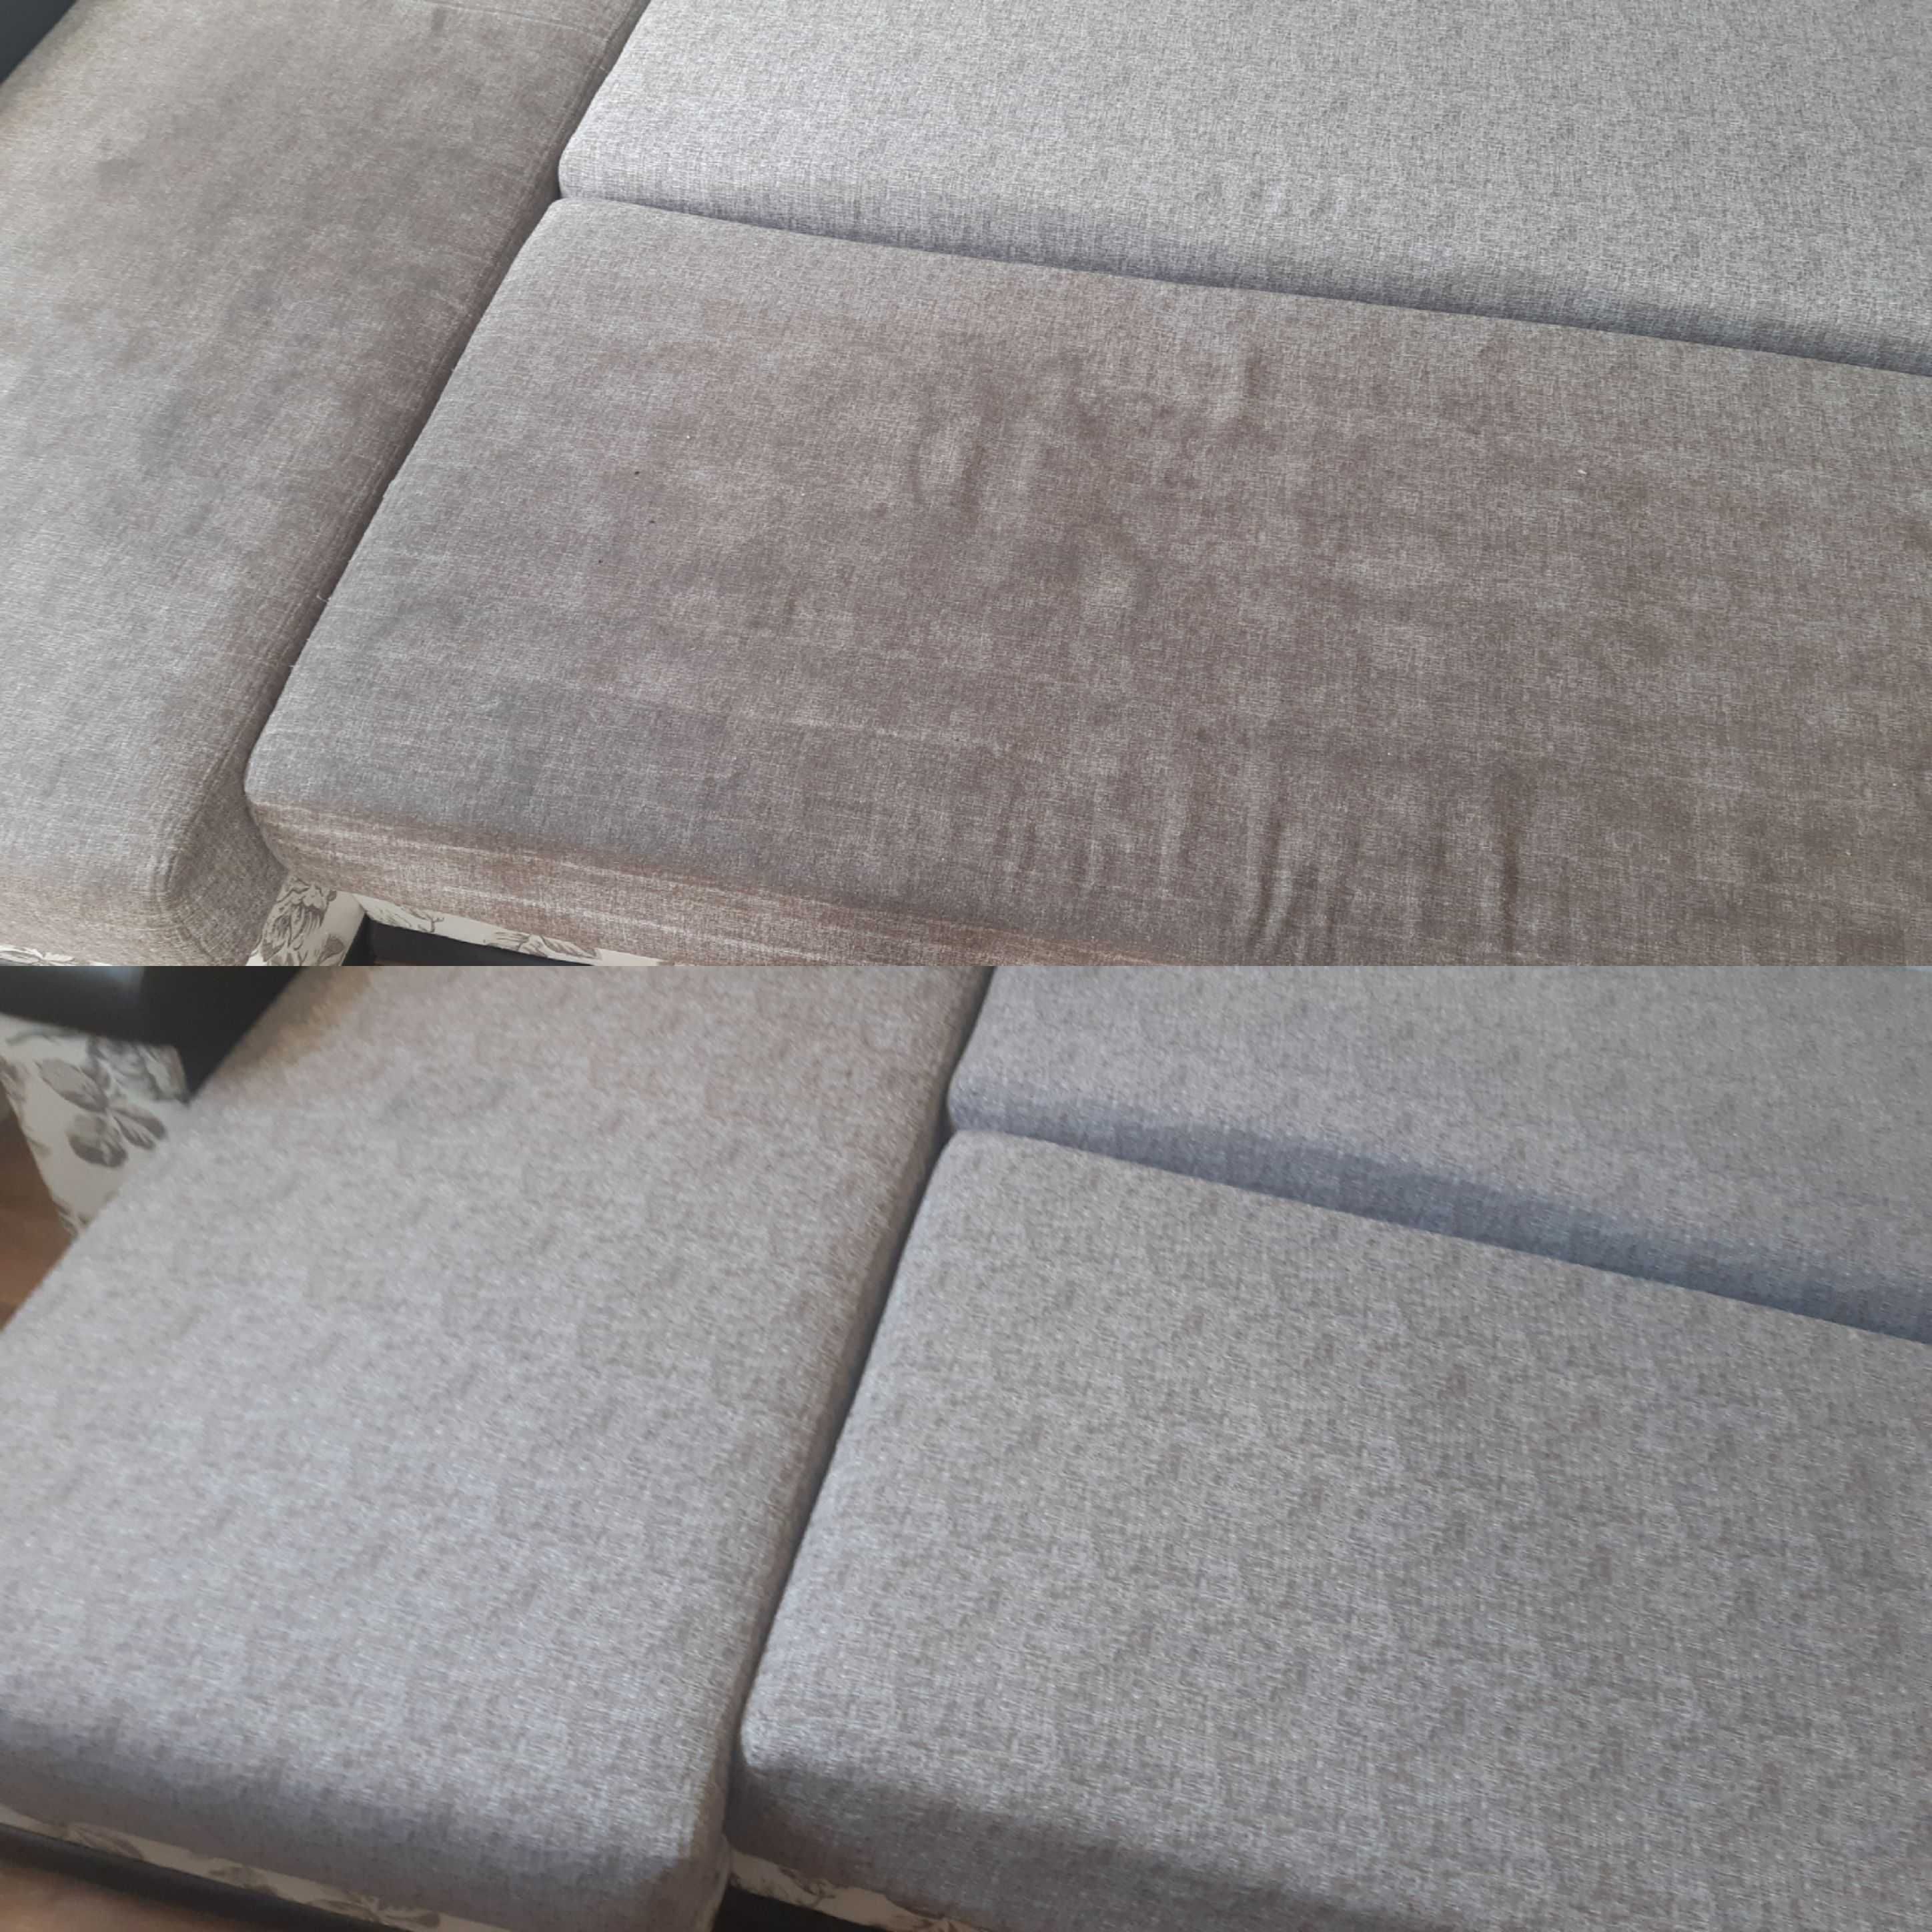 Химчистка мебели дивана/матраса/ковролина/уборка клининг